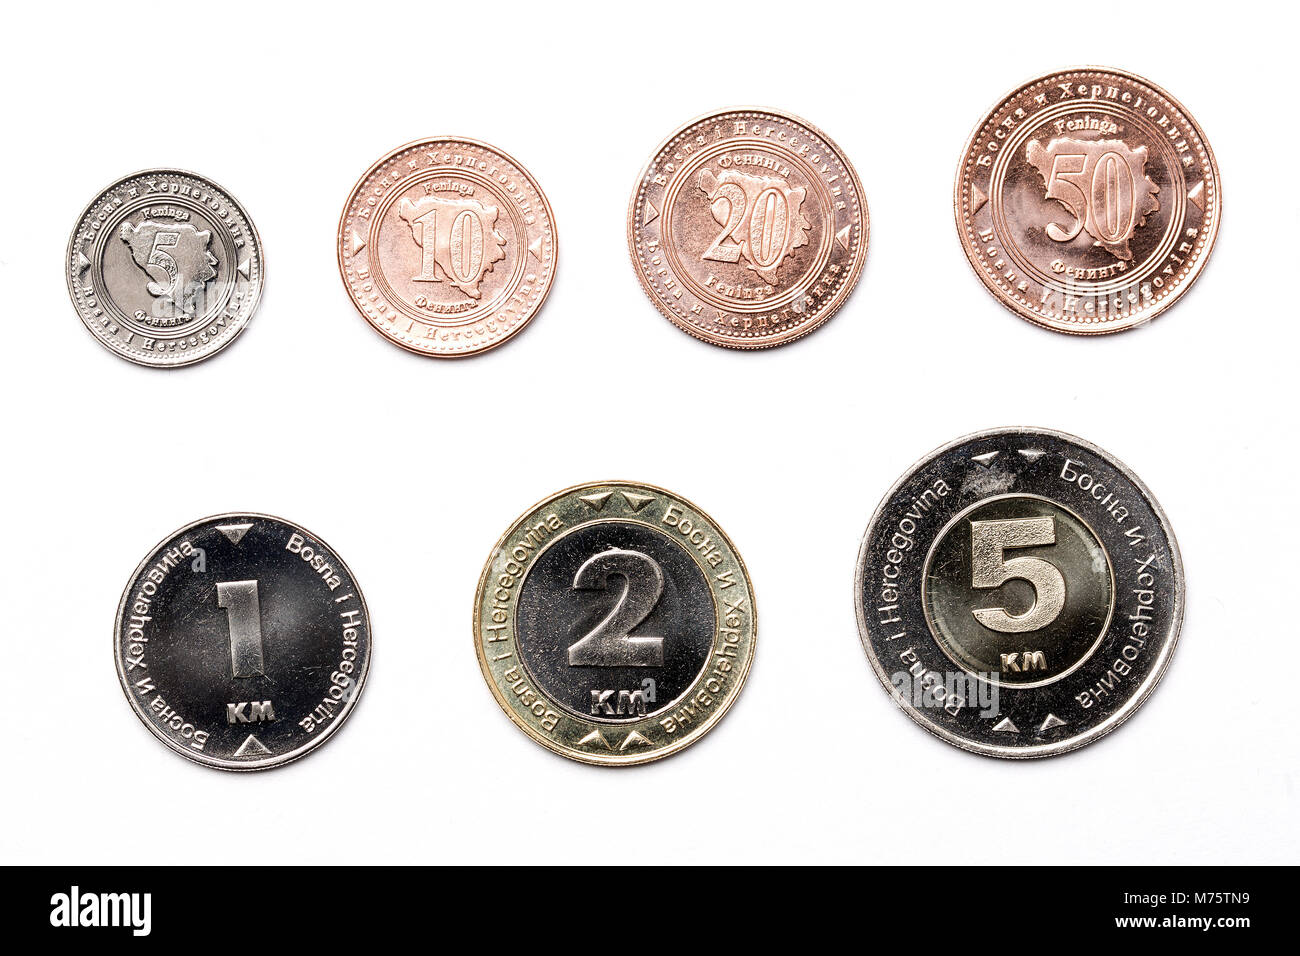 Pièces de monnaie de la Bosnie-Herzégovine sur un fond blanc Banque D'Images